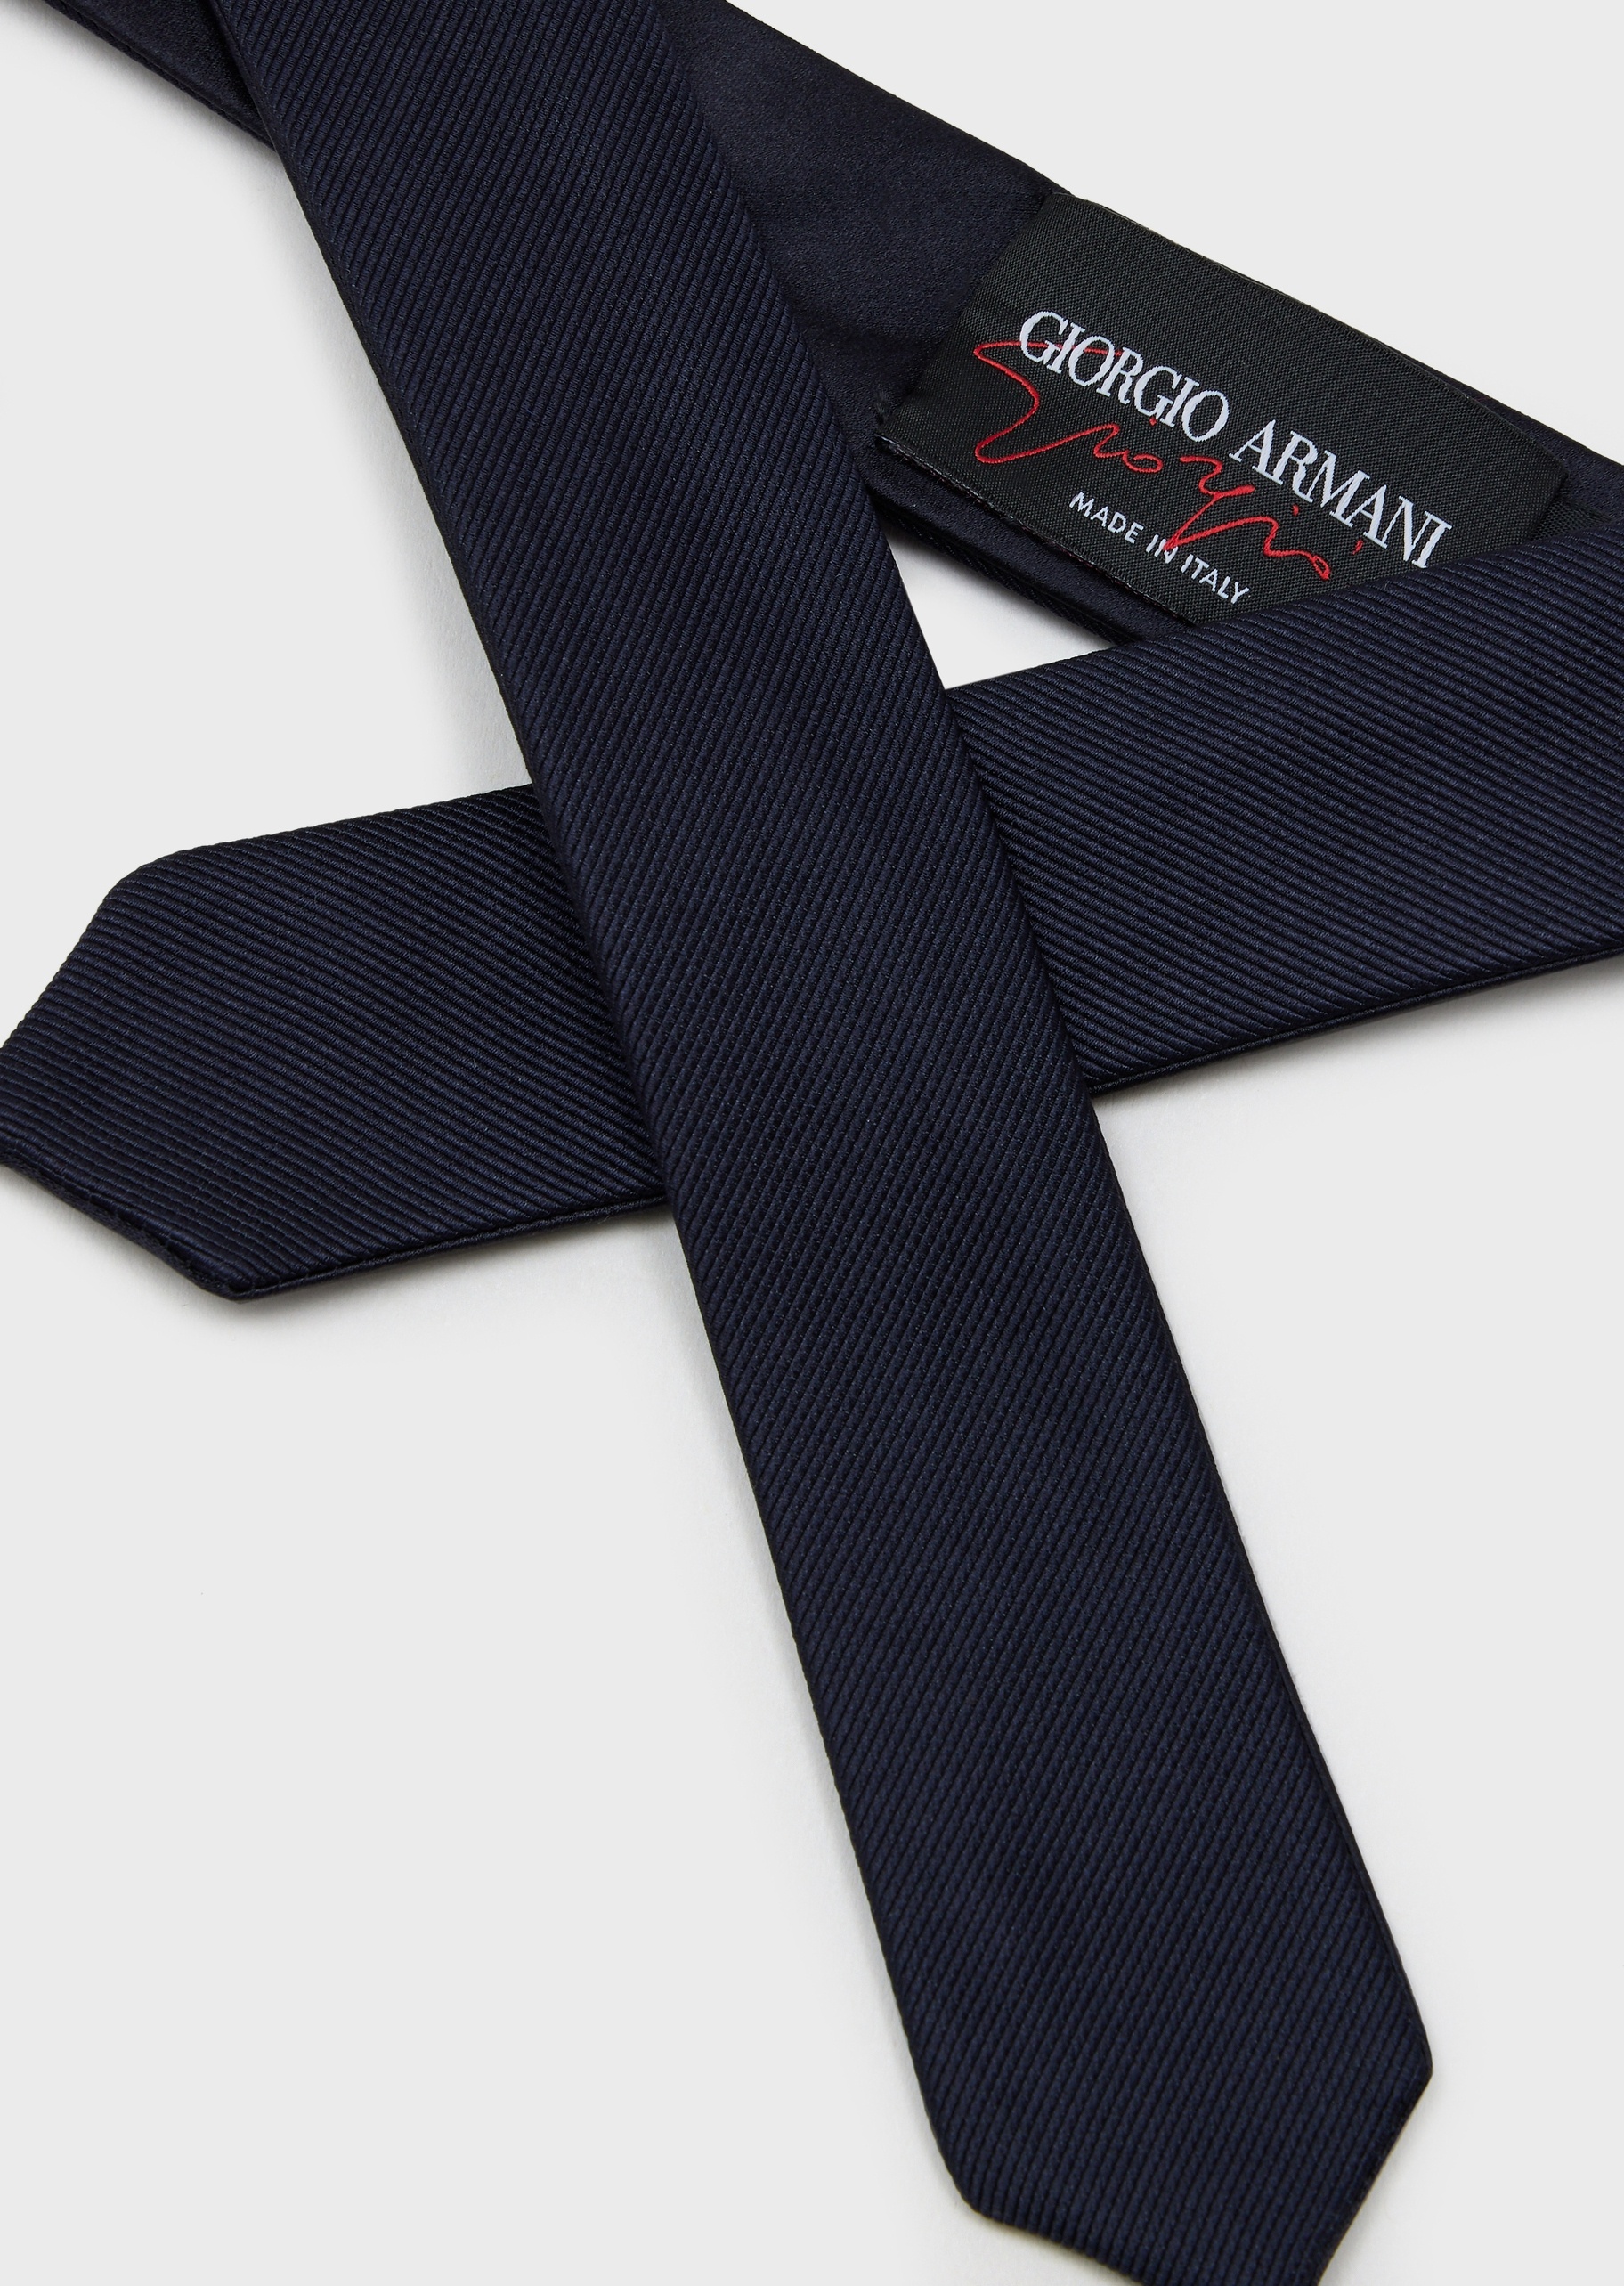 Giorgio Armani 男士休闲编织斜纹提花桑蚕丝纯色商务细领带